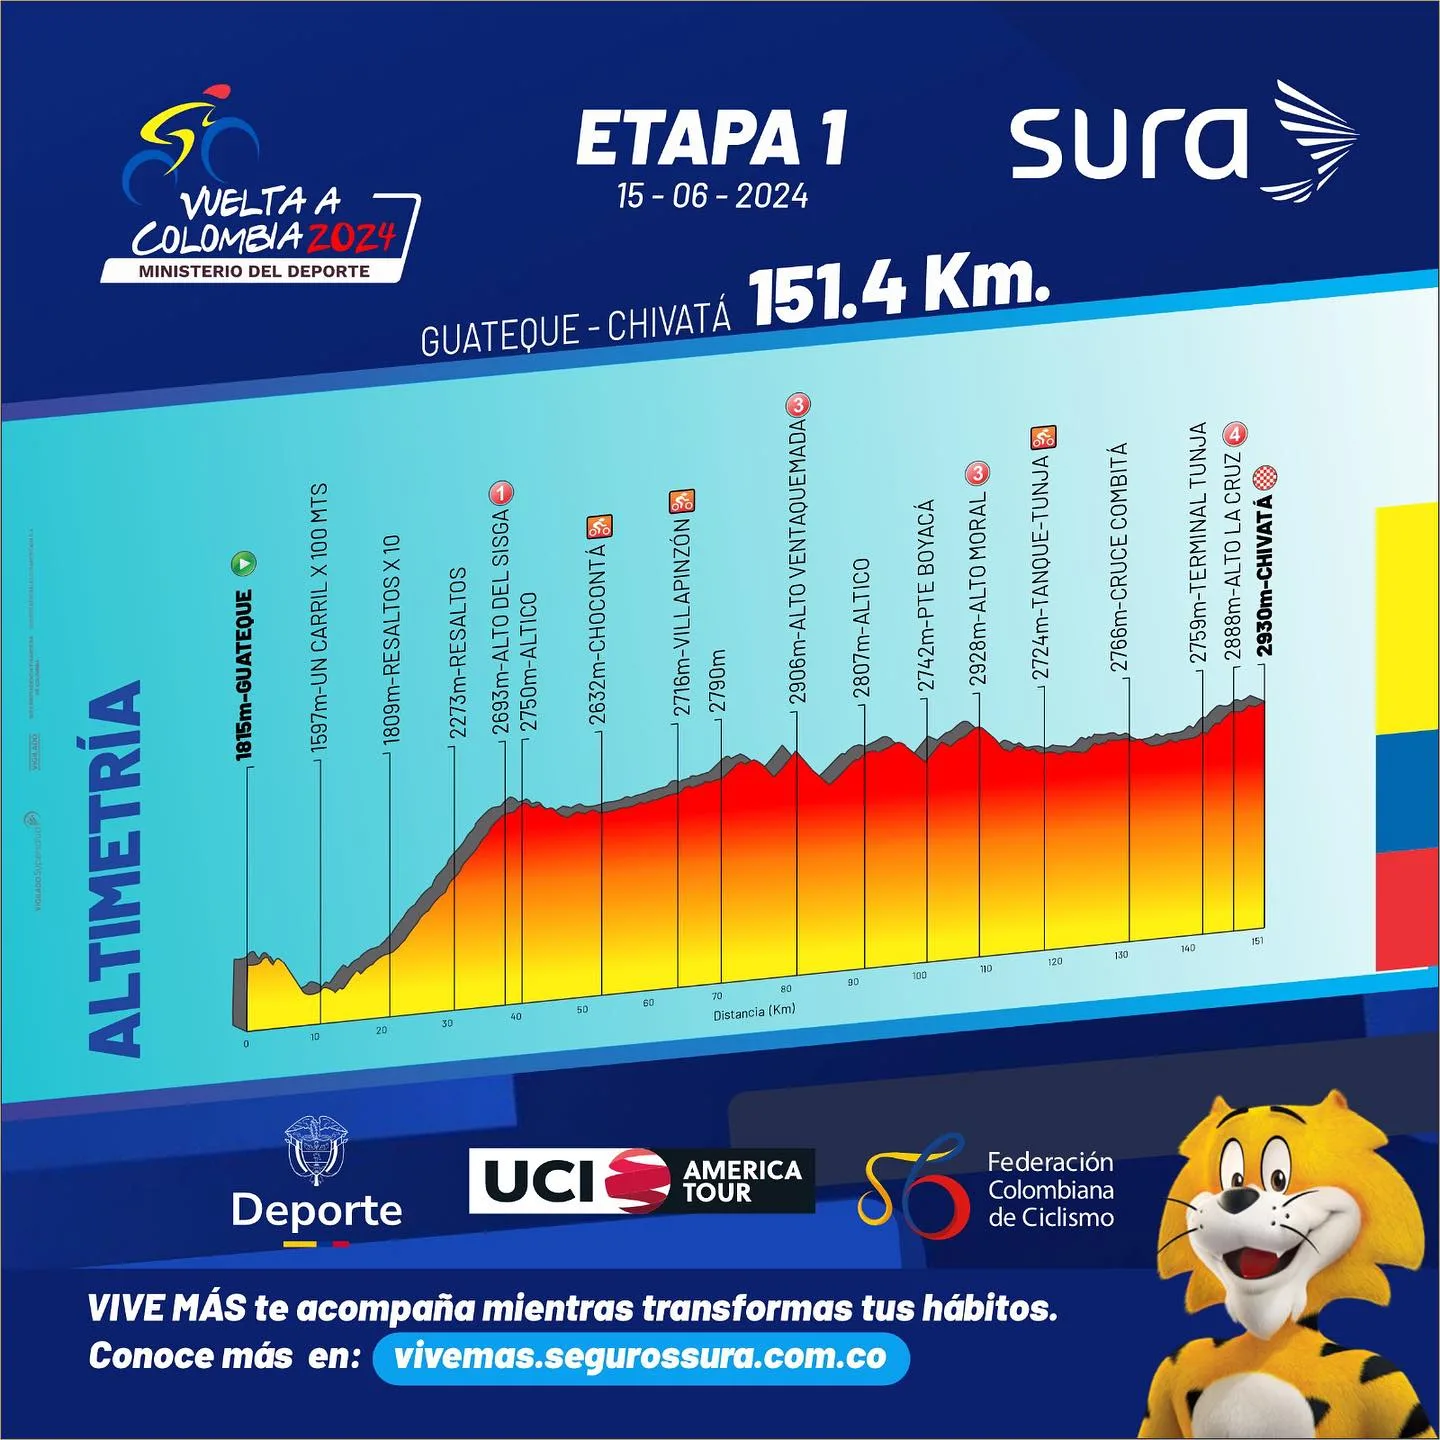 Etapa 1 Vuelta a Colombia 2024 